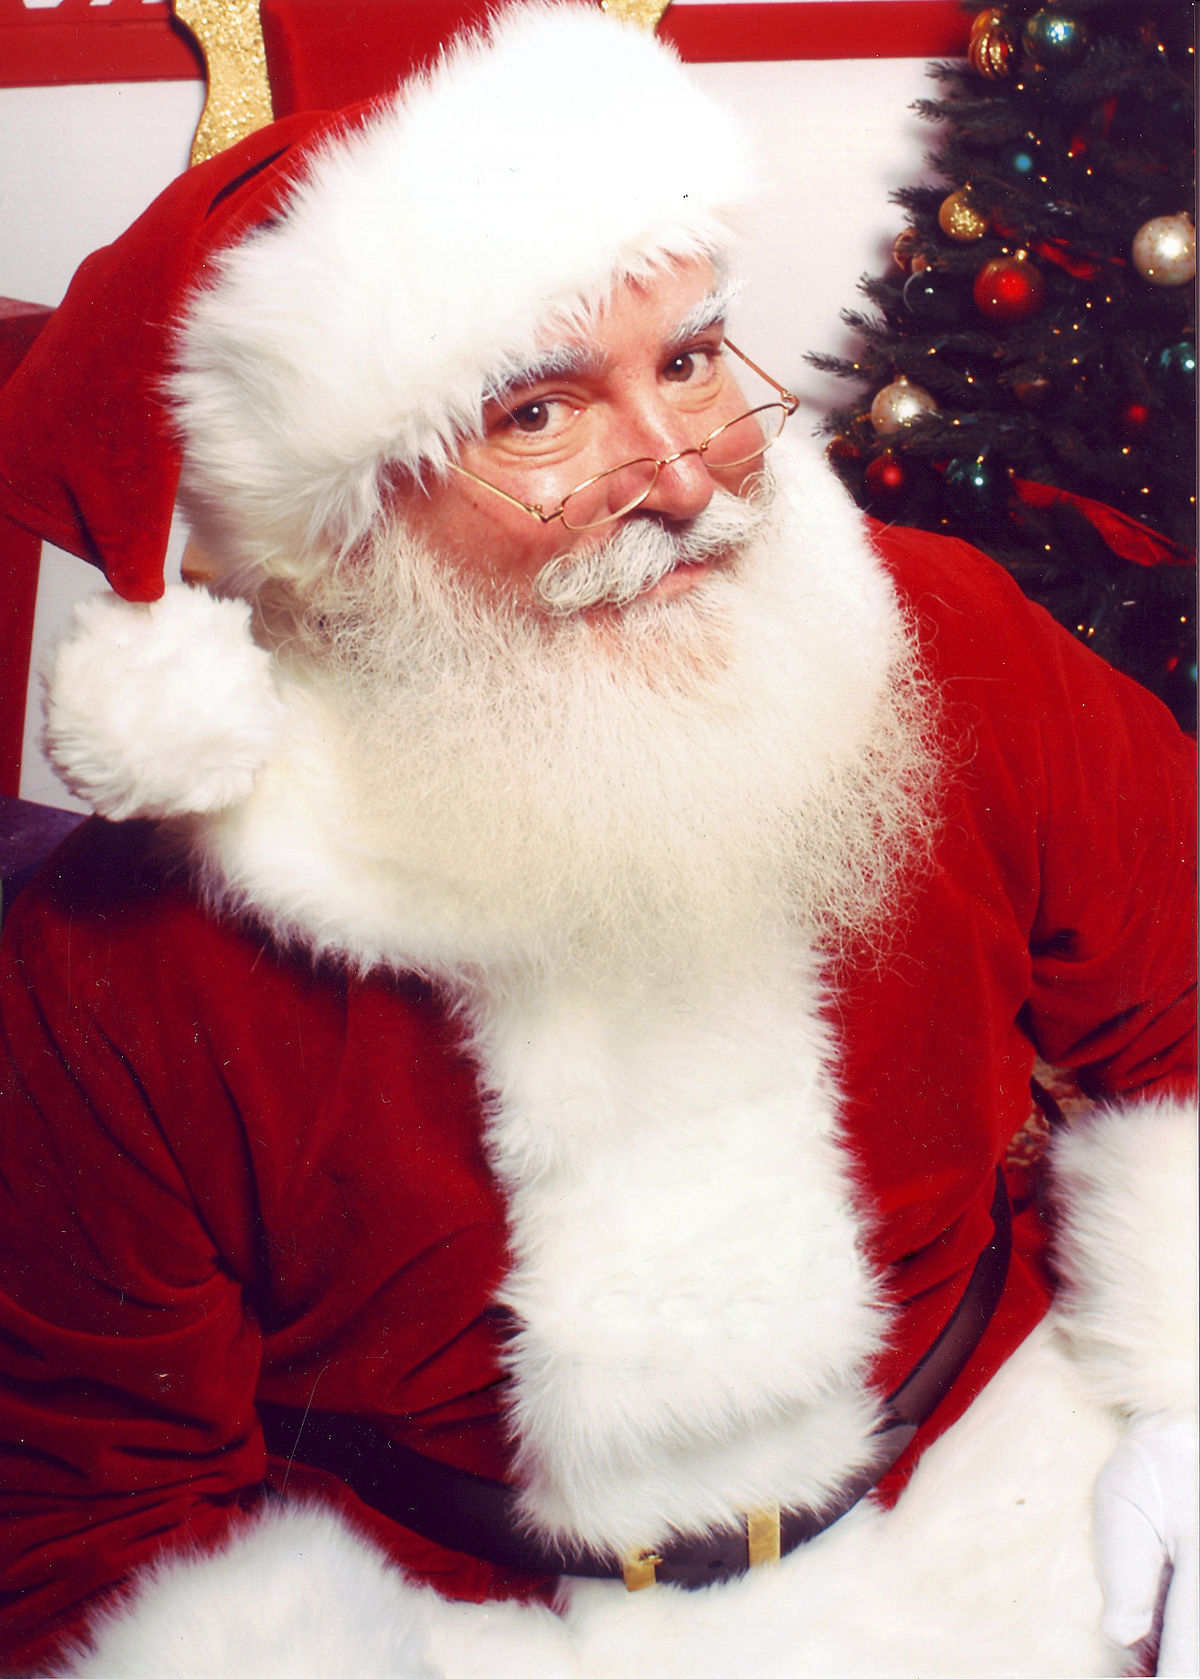 Weihnachtsmann – Wikipedia in Welche Farbe Hatte Das Gewand Des Weihnachtsmanns Ursprünglich